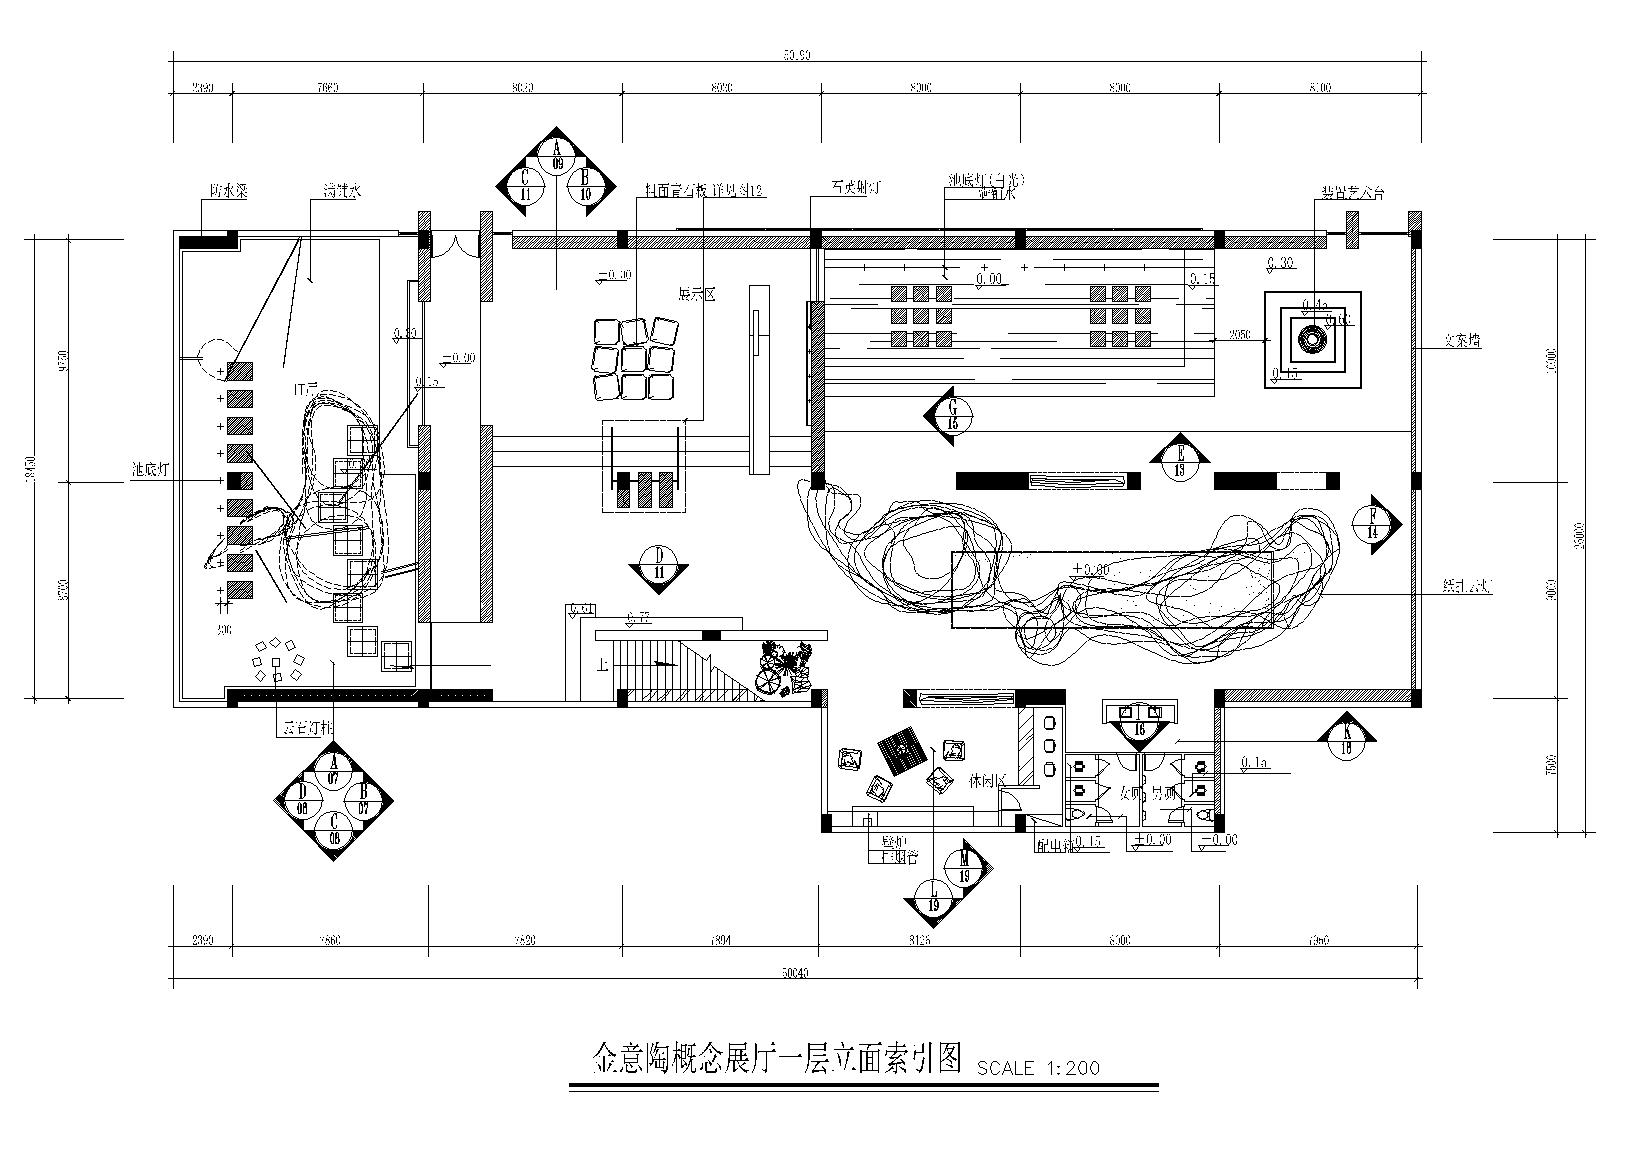 KITO某概念展厅艺术思想馆施工图+建筑外观-立面索引图10